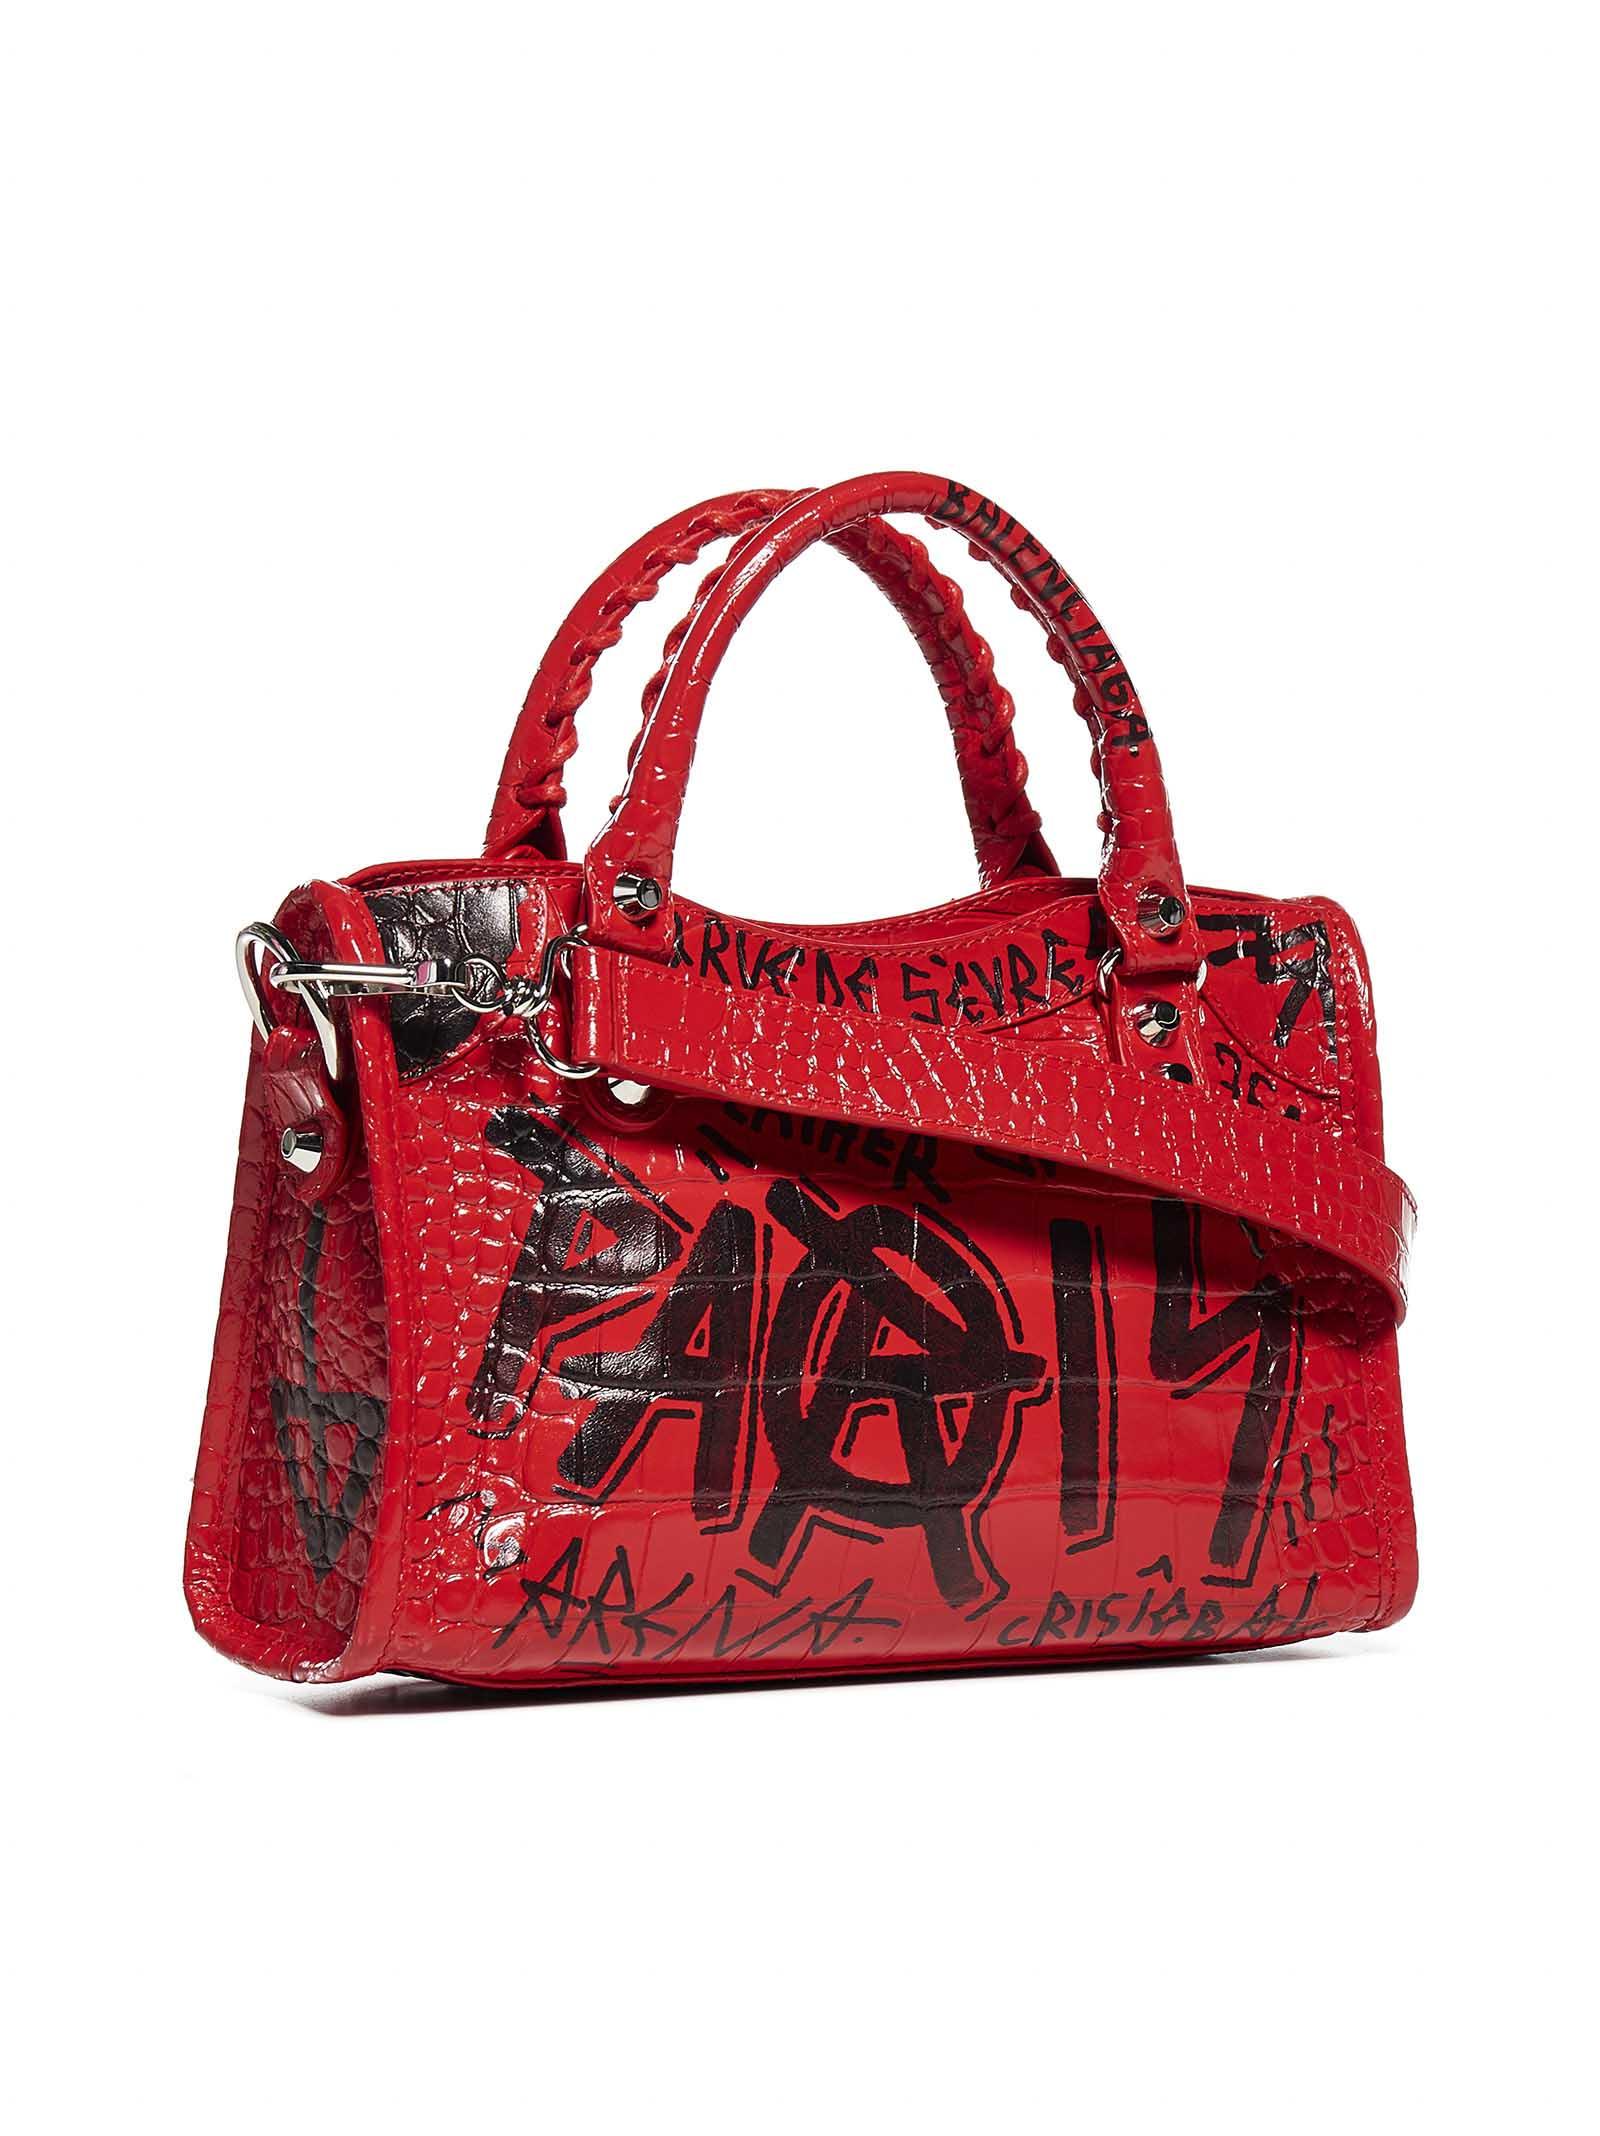 Balenciaga Mini City Graffiti Print Croco Leather Bag in Red - Black 